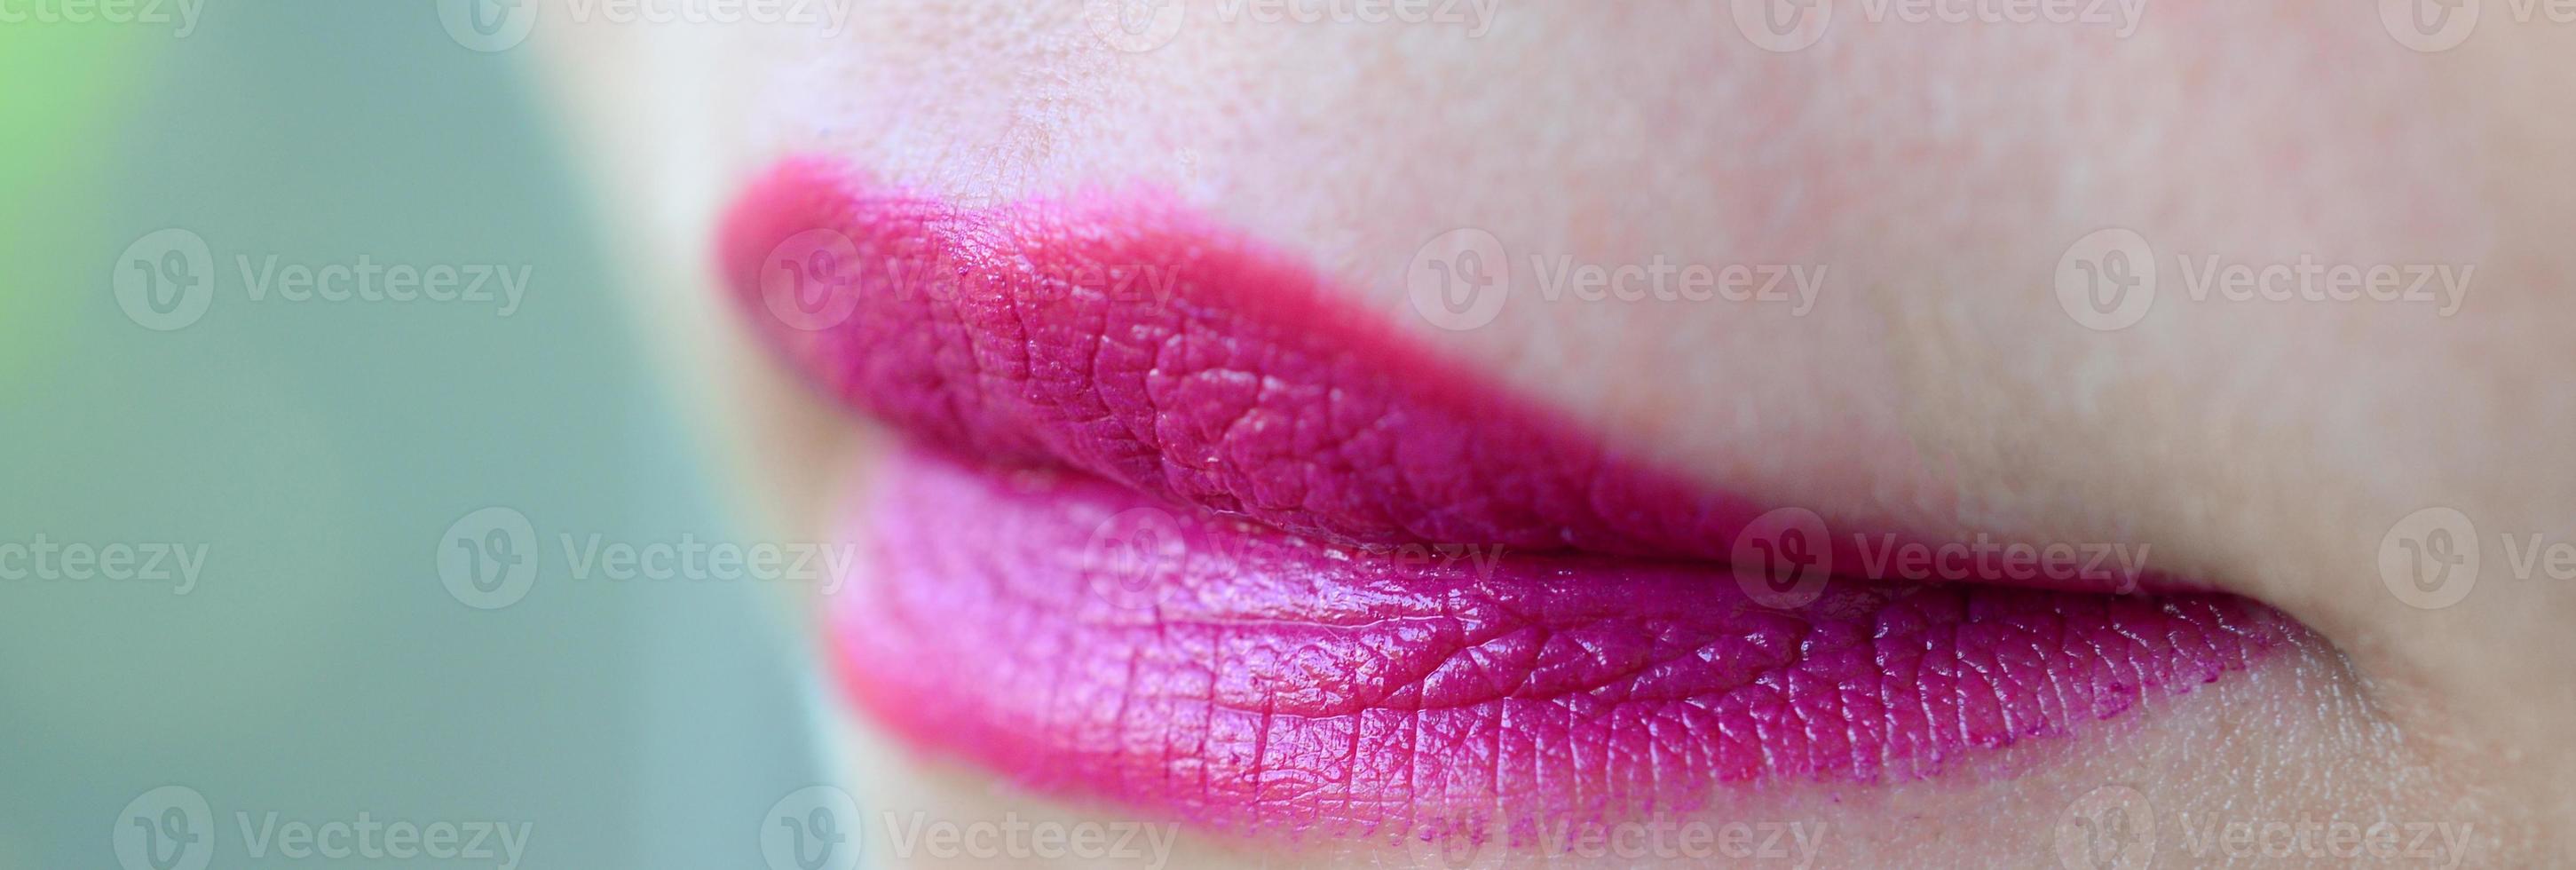 dichtbij omhoog schot van vrouw lippen met glanzend fuchsia lippenstift foto